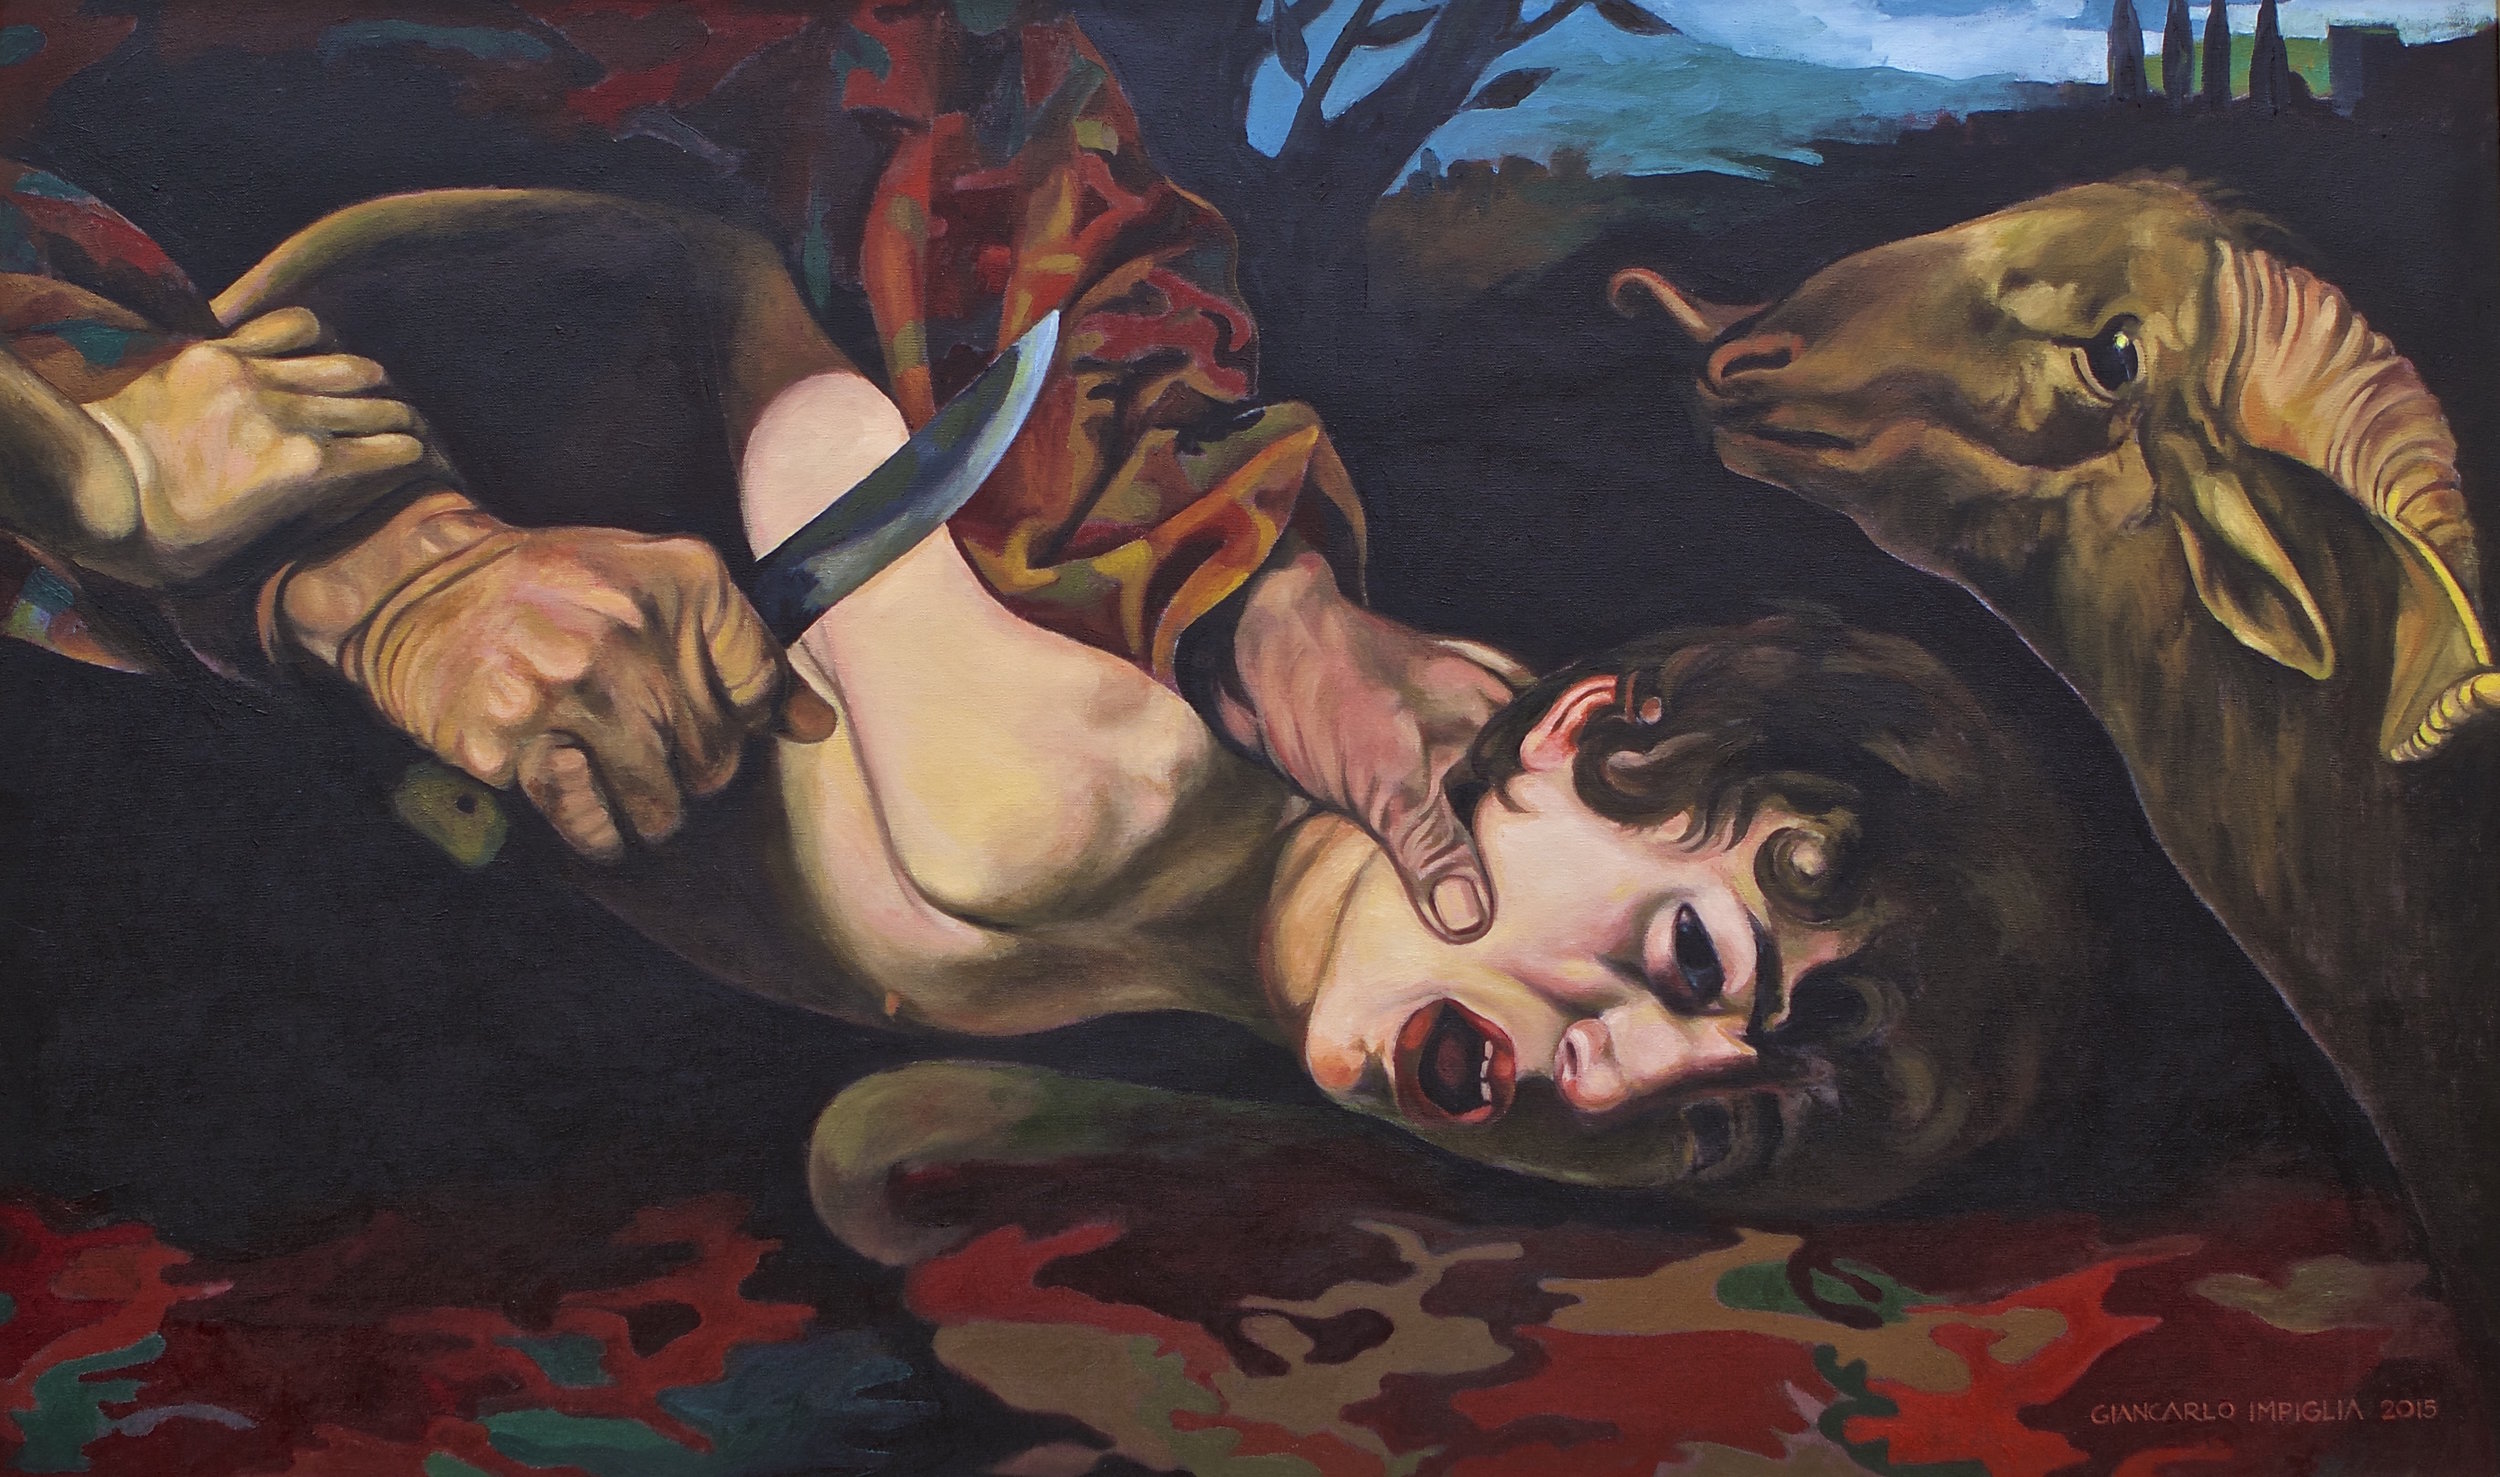   The Sacrifice , 2015, Oil on camouflage canvas, 50 x 30" 